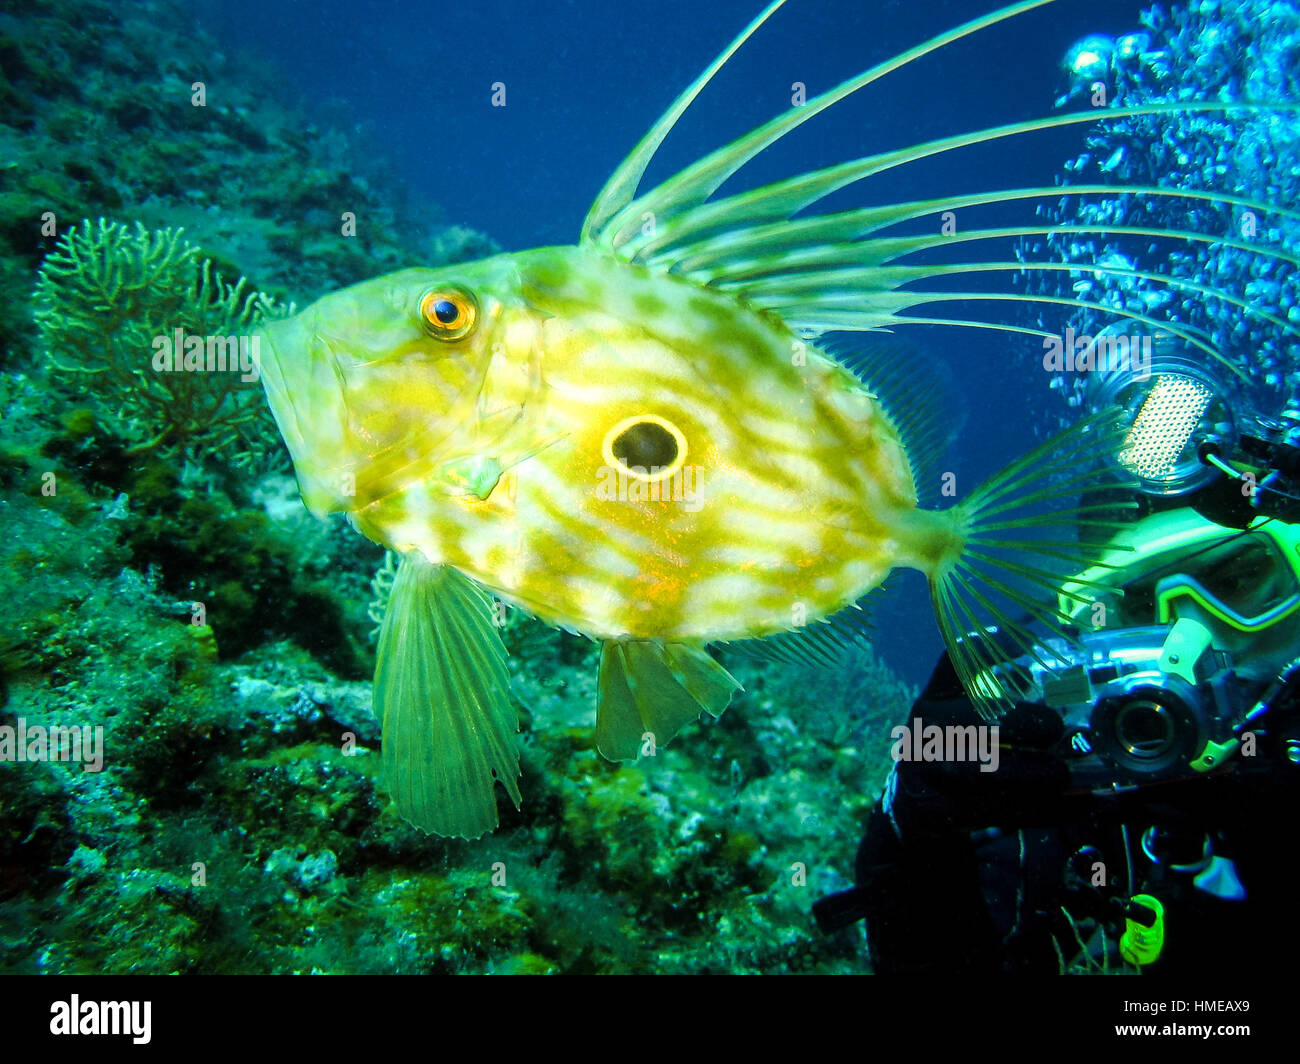 Unterwasser-Fotografen nimmt ein Bild des Zeus Faber - Petersfisch, St-Pierre oder Peter Fisch im natürlichen Lebensraum in Adria Kroatien. Seascape n Stockfoto